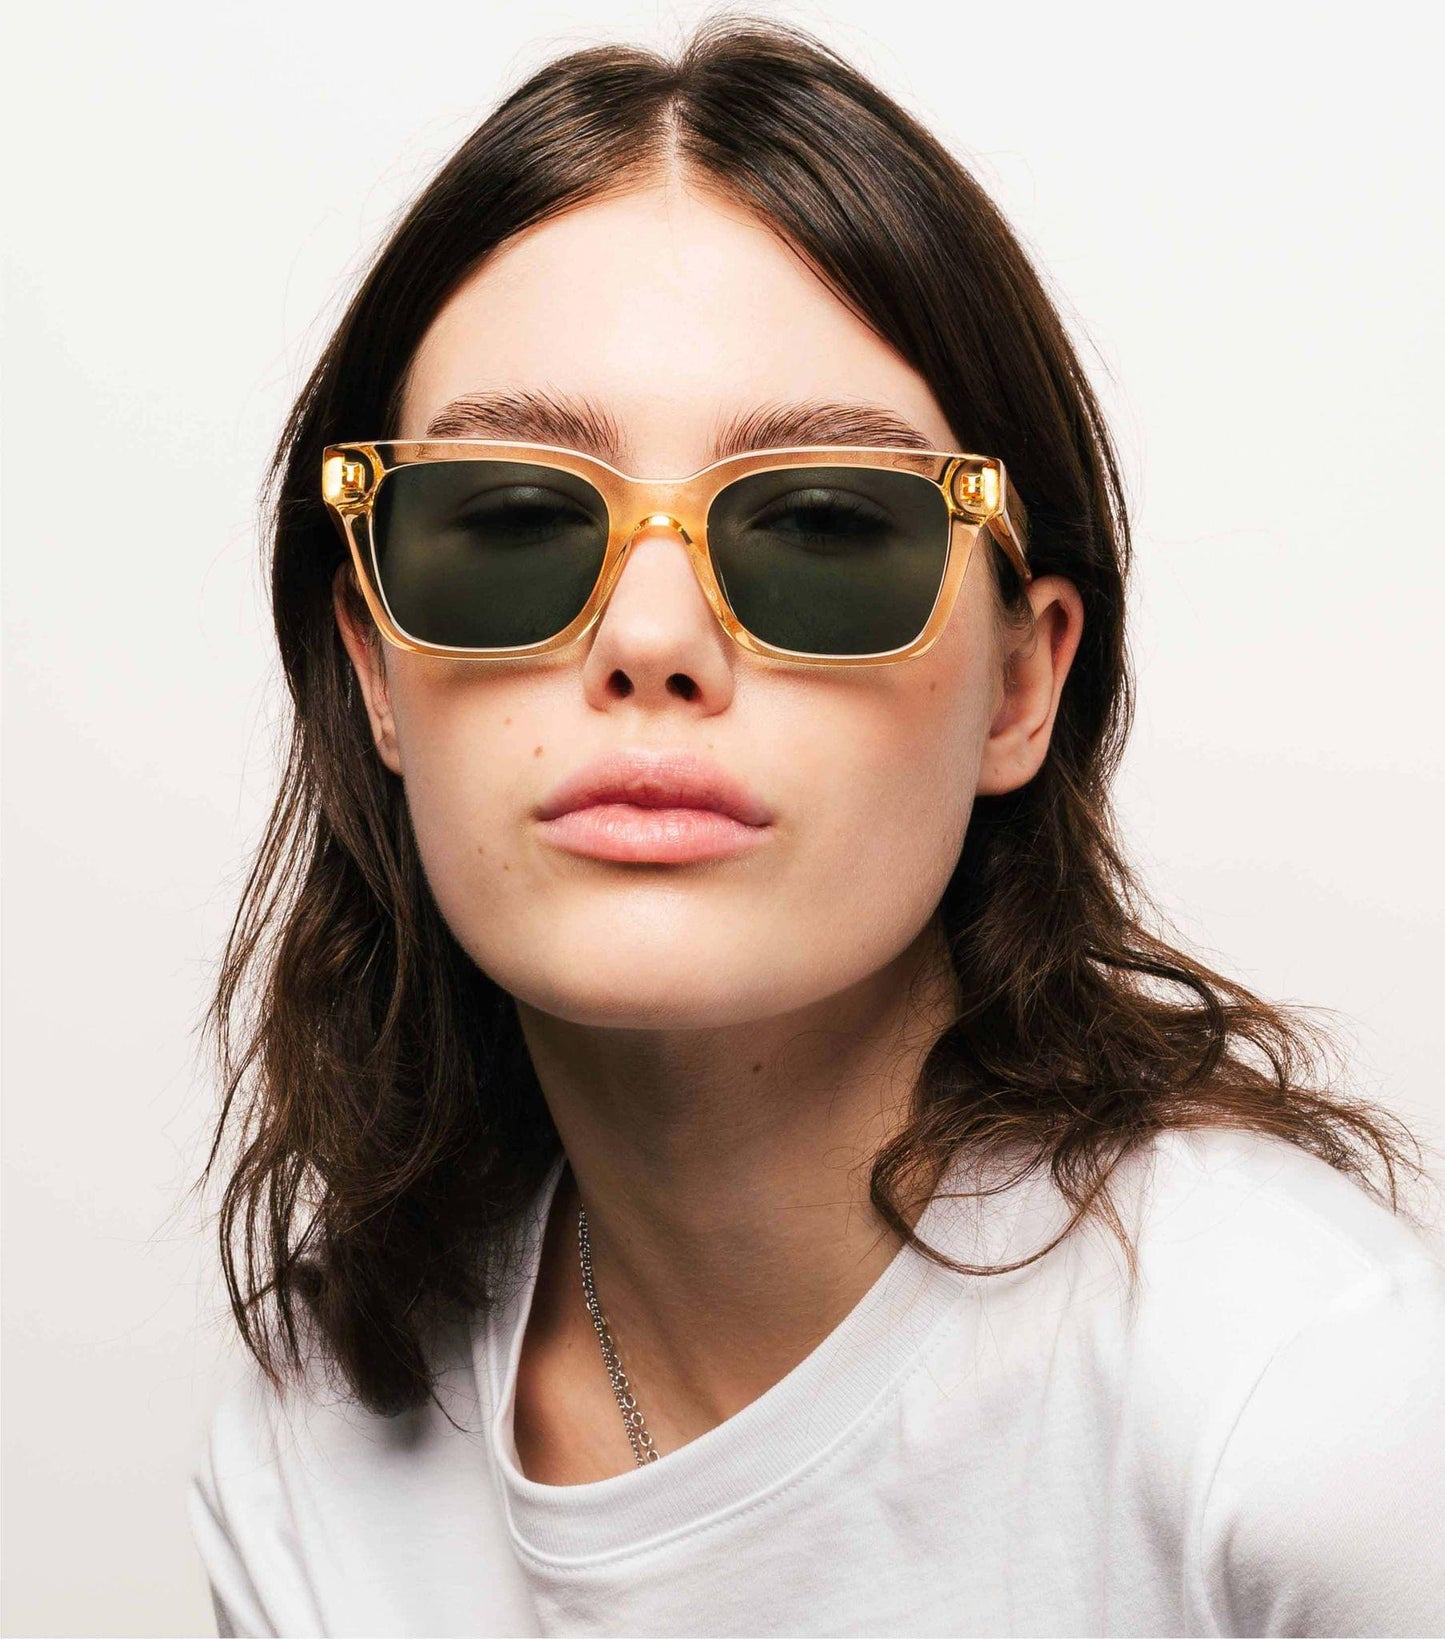 Dean, Rectangular sunglasses for men and women green lens UV400 protection